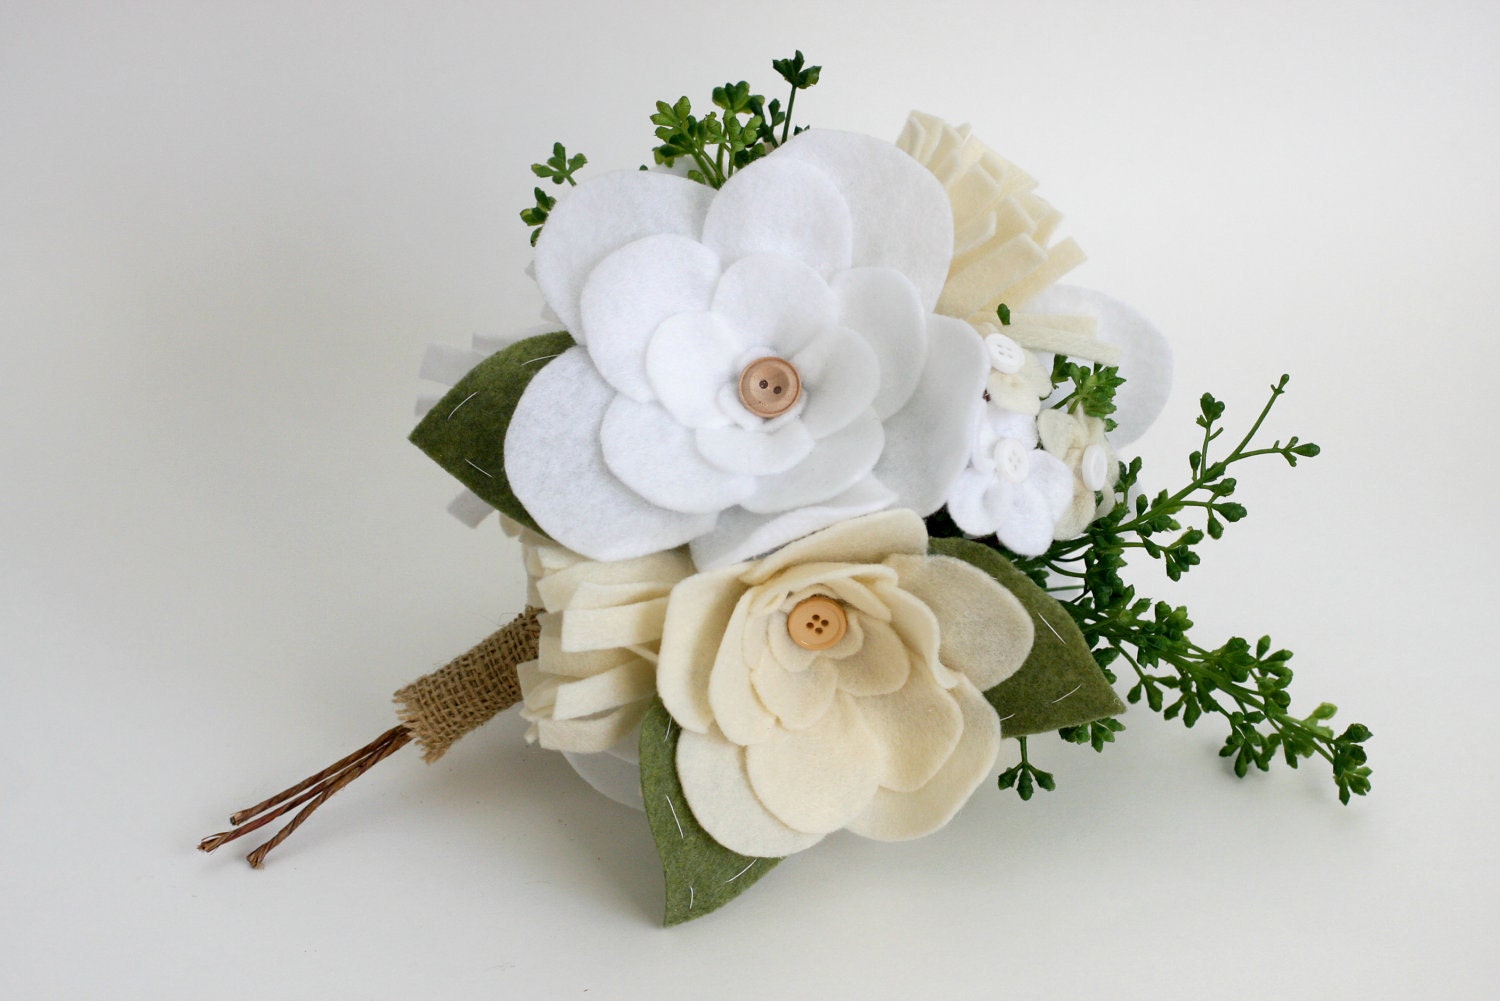 Personalizado Bouquet-Sweet irrisório-flores de feltro botões fio enrolado casca e ramos verdes